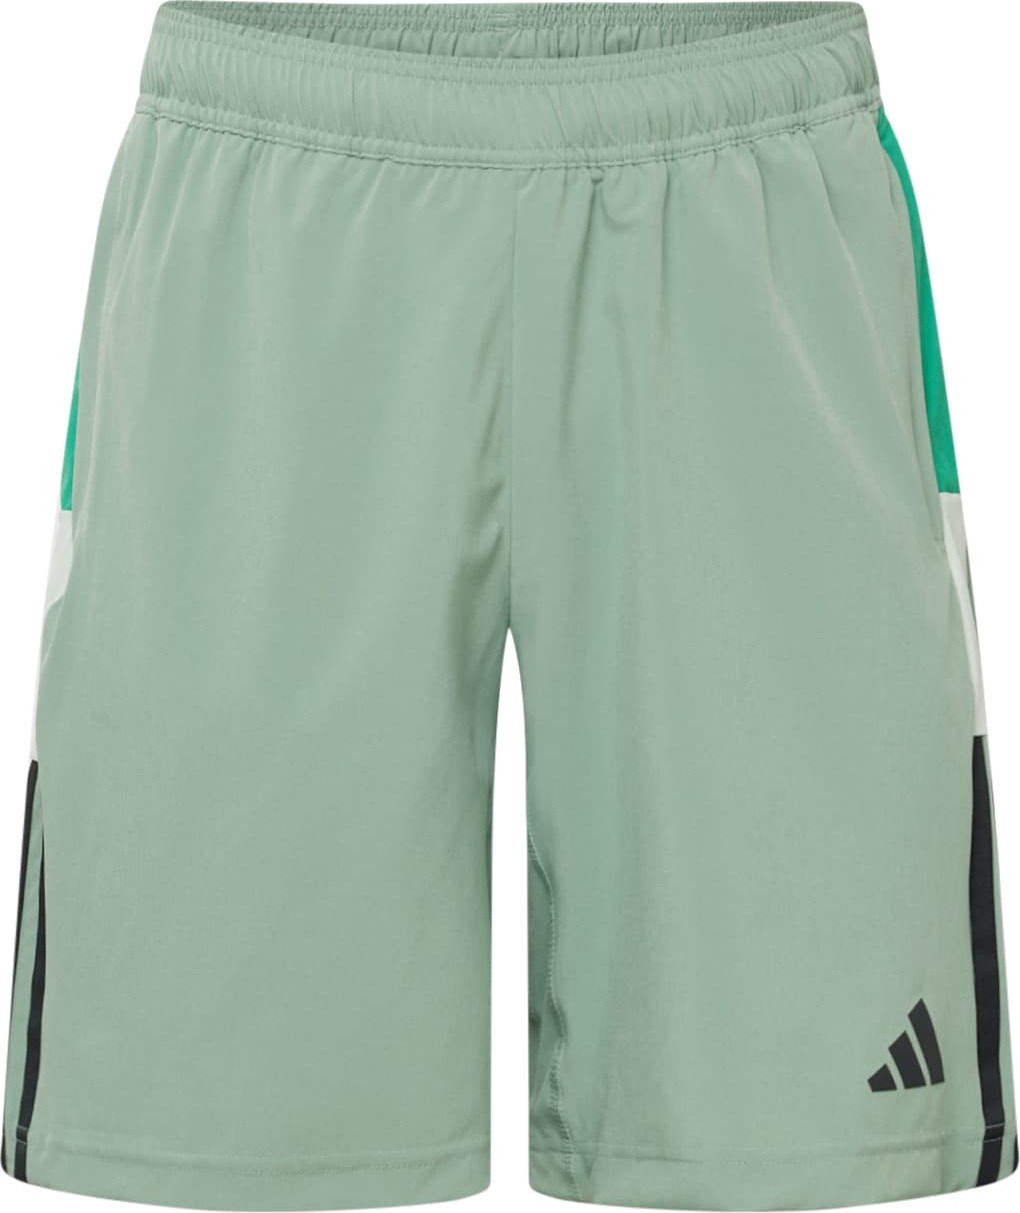 ADIDAS PERFORMANCE Sportovní kalhoty šedá / světle zelená / tmavě zelená / bílá